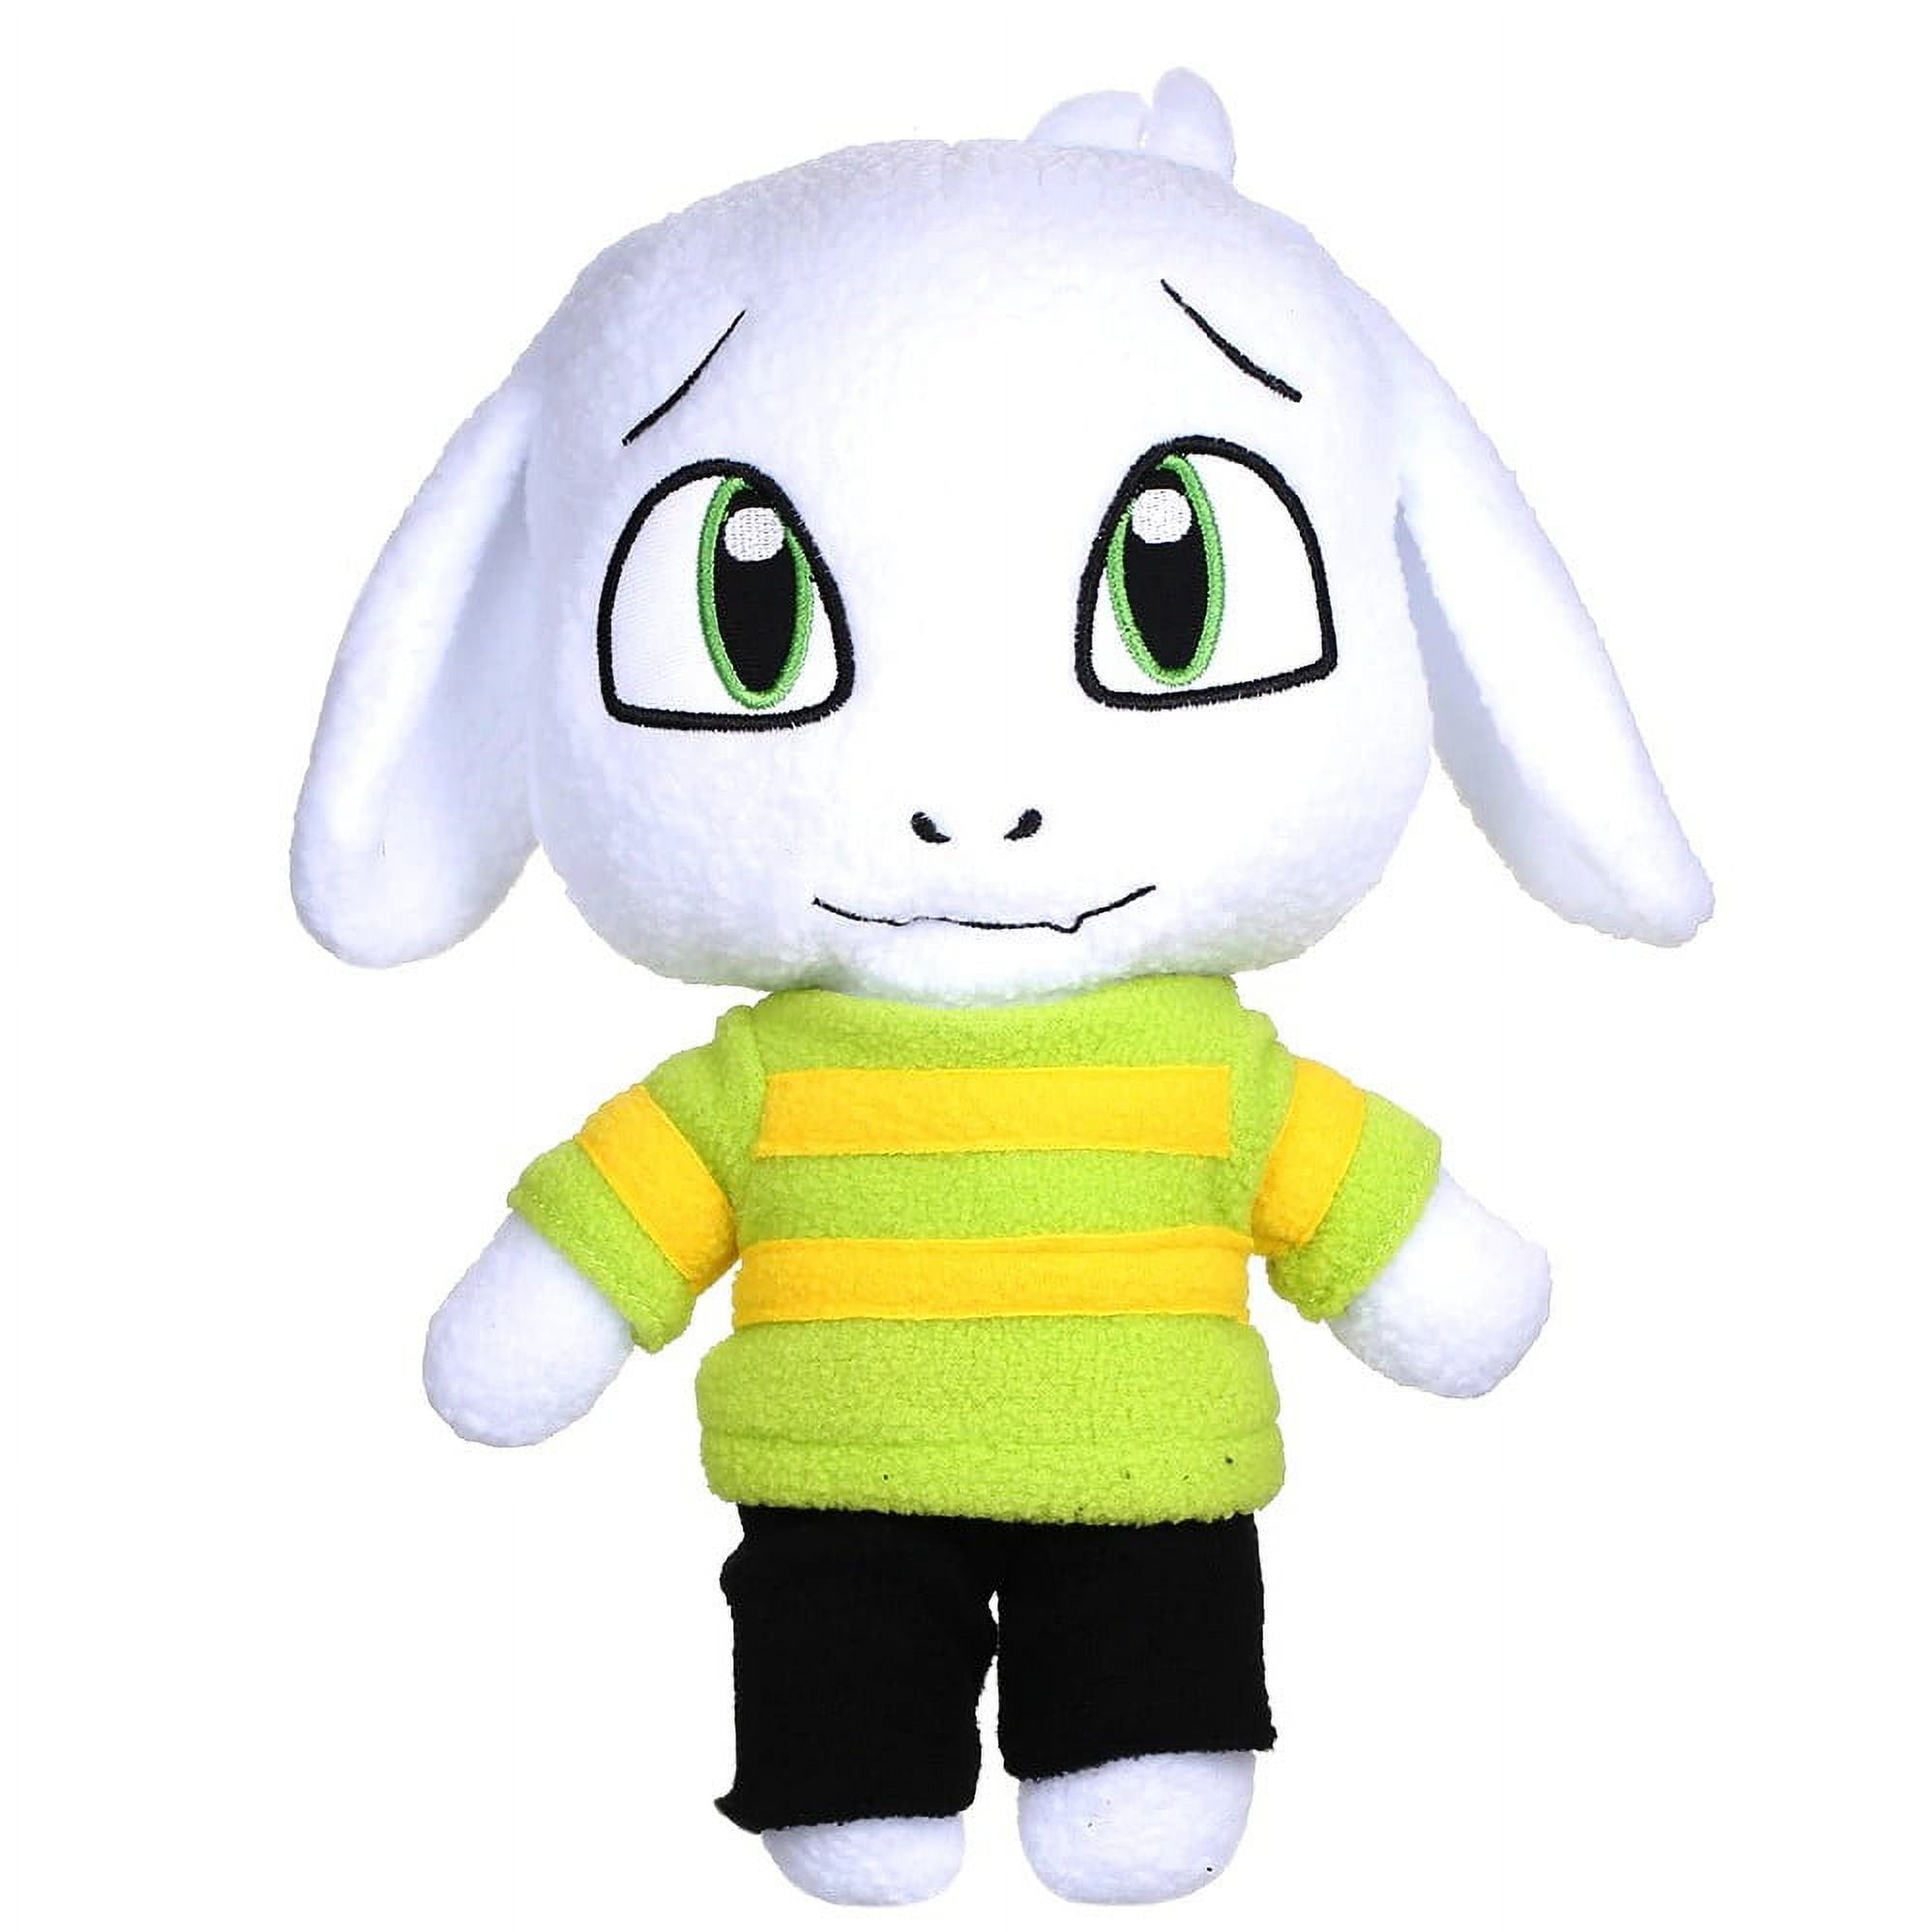 Chara - Undertale Plush Stuffed Animal Kids Toy Plushie 